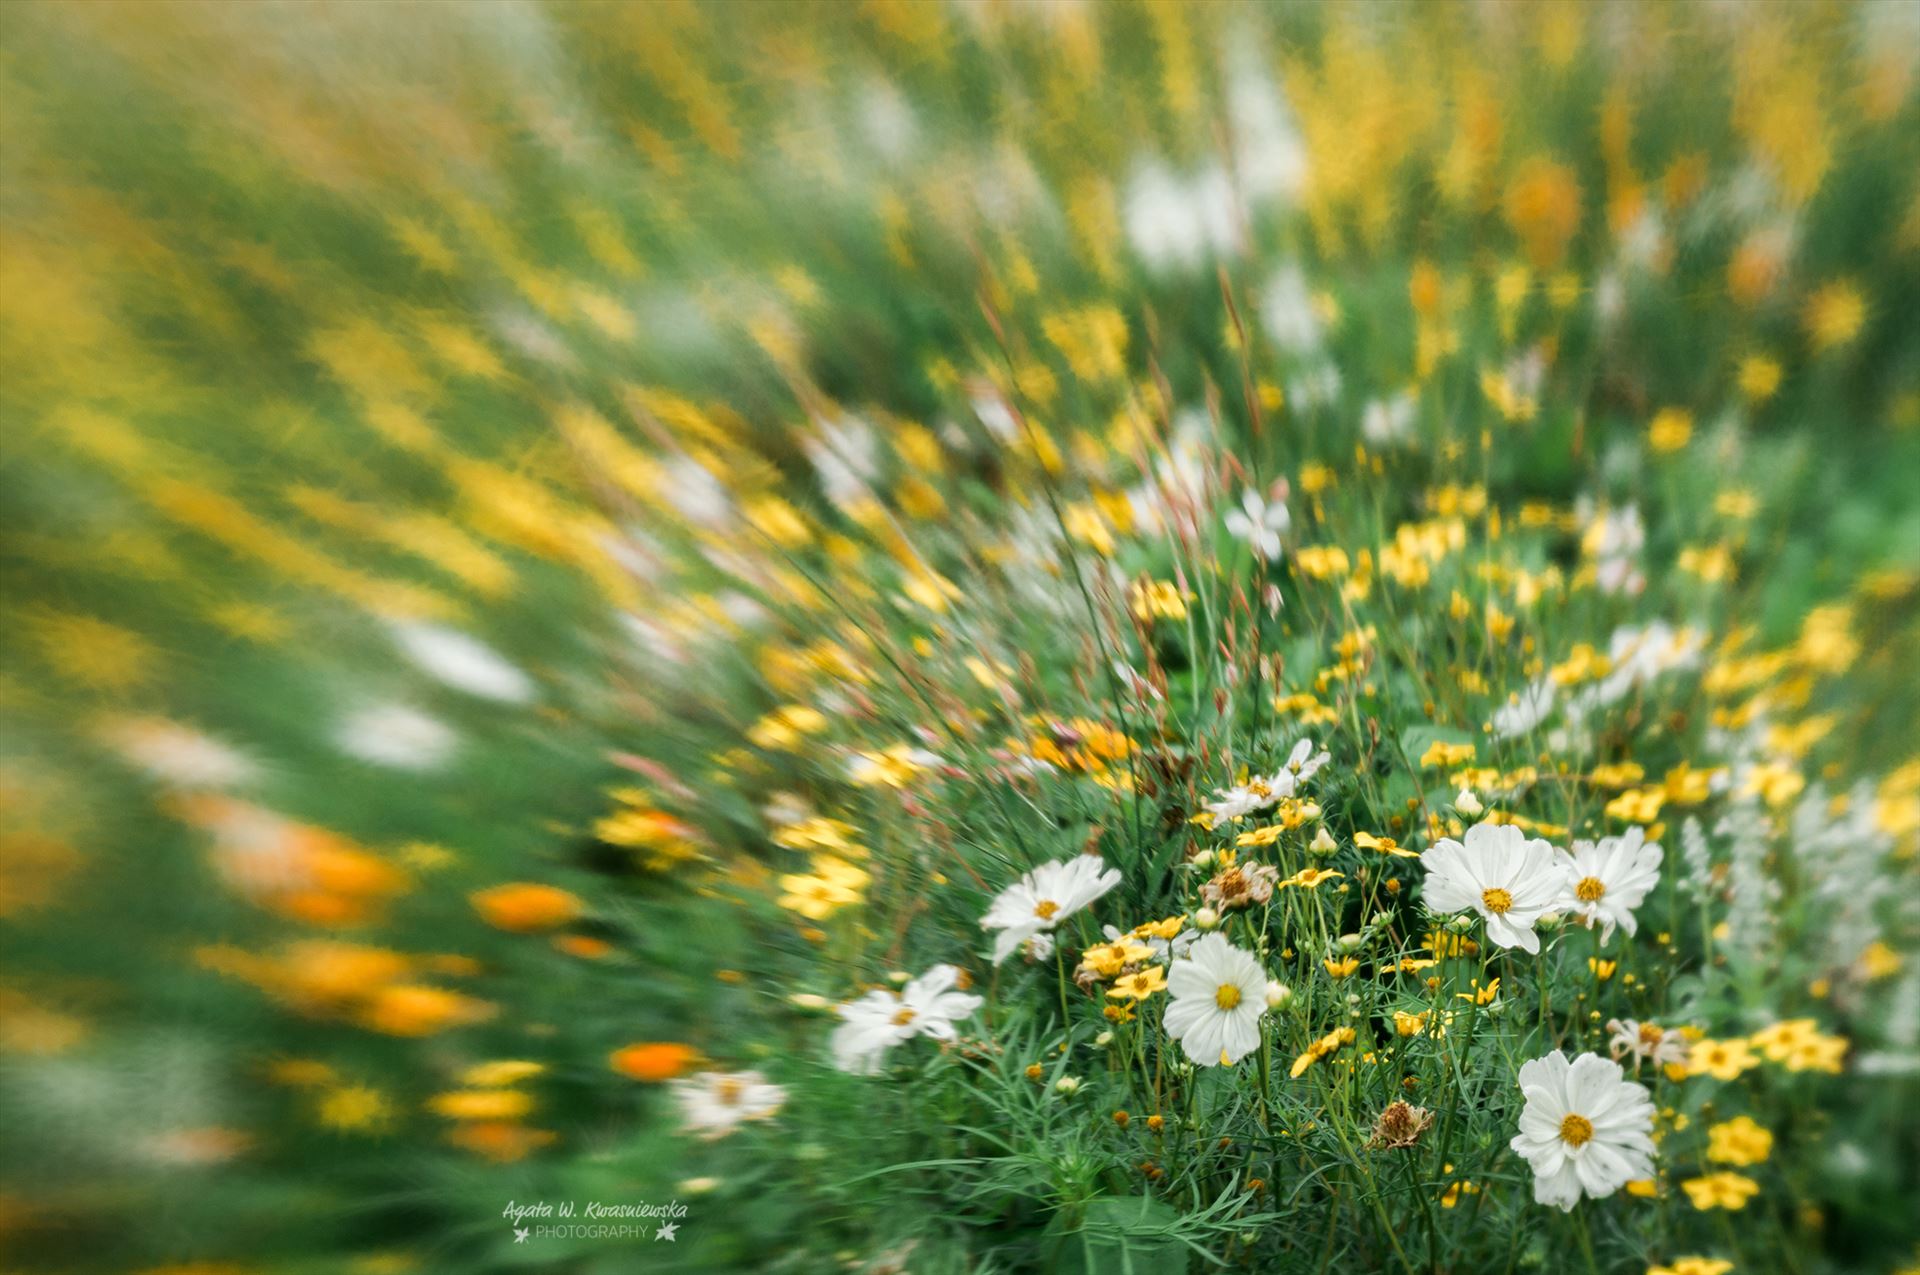 Flower meadow  by Agata W. Kwasniewska Photography